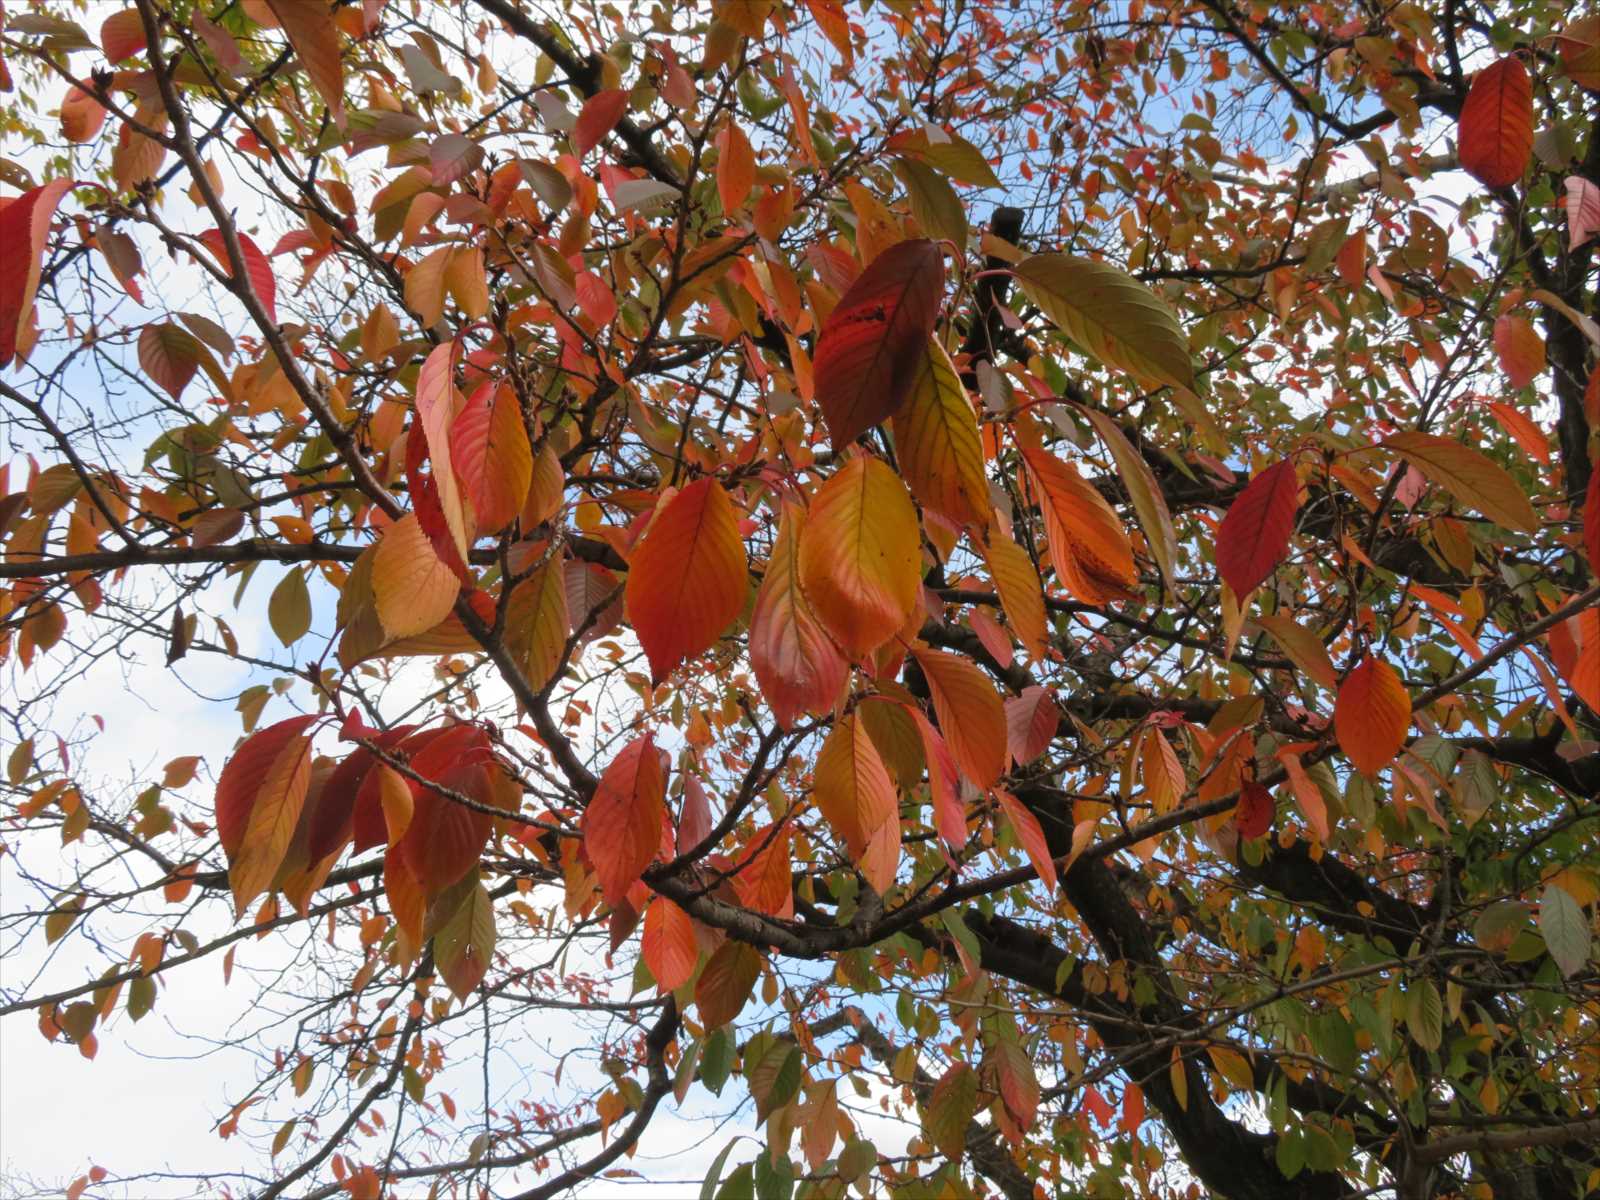 団地の桜の紅葉 11月9日 ニンニク父さんのブログ 楽天ブログ